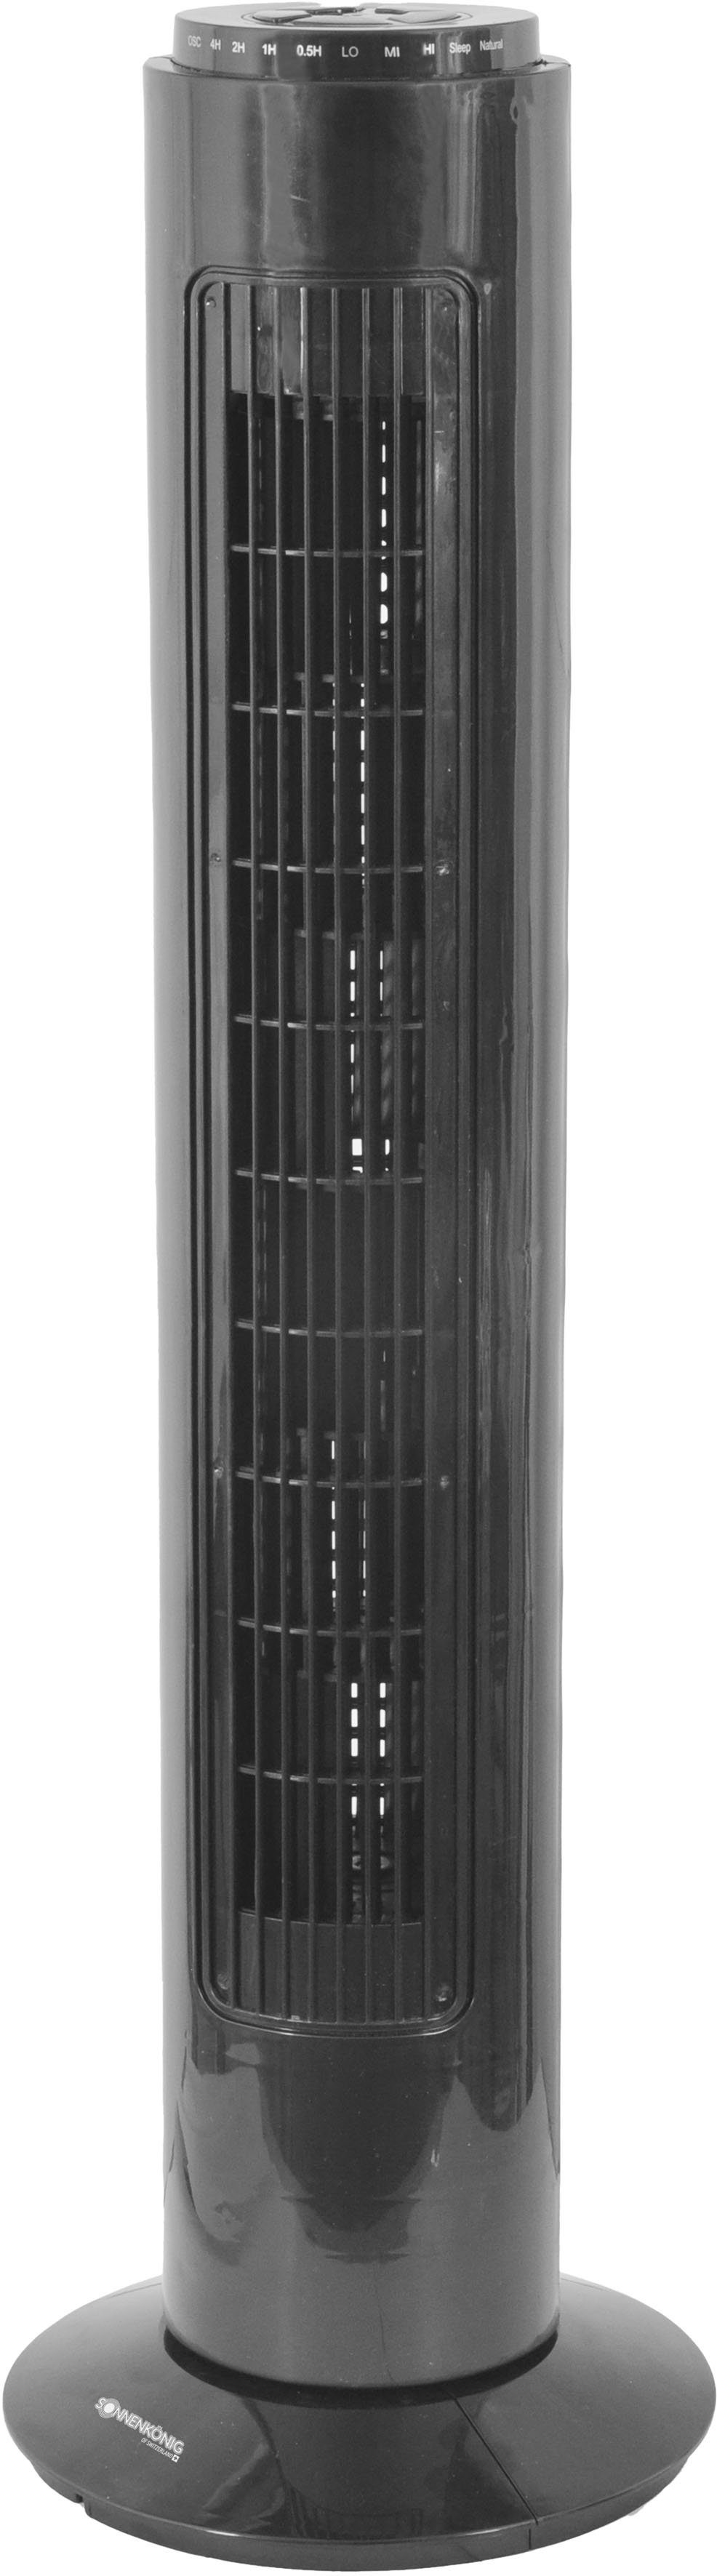 Pisa Sonnenkönig Turmventilator